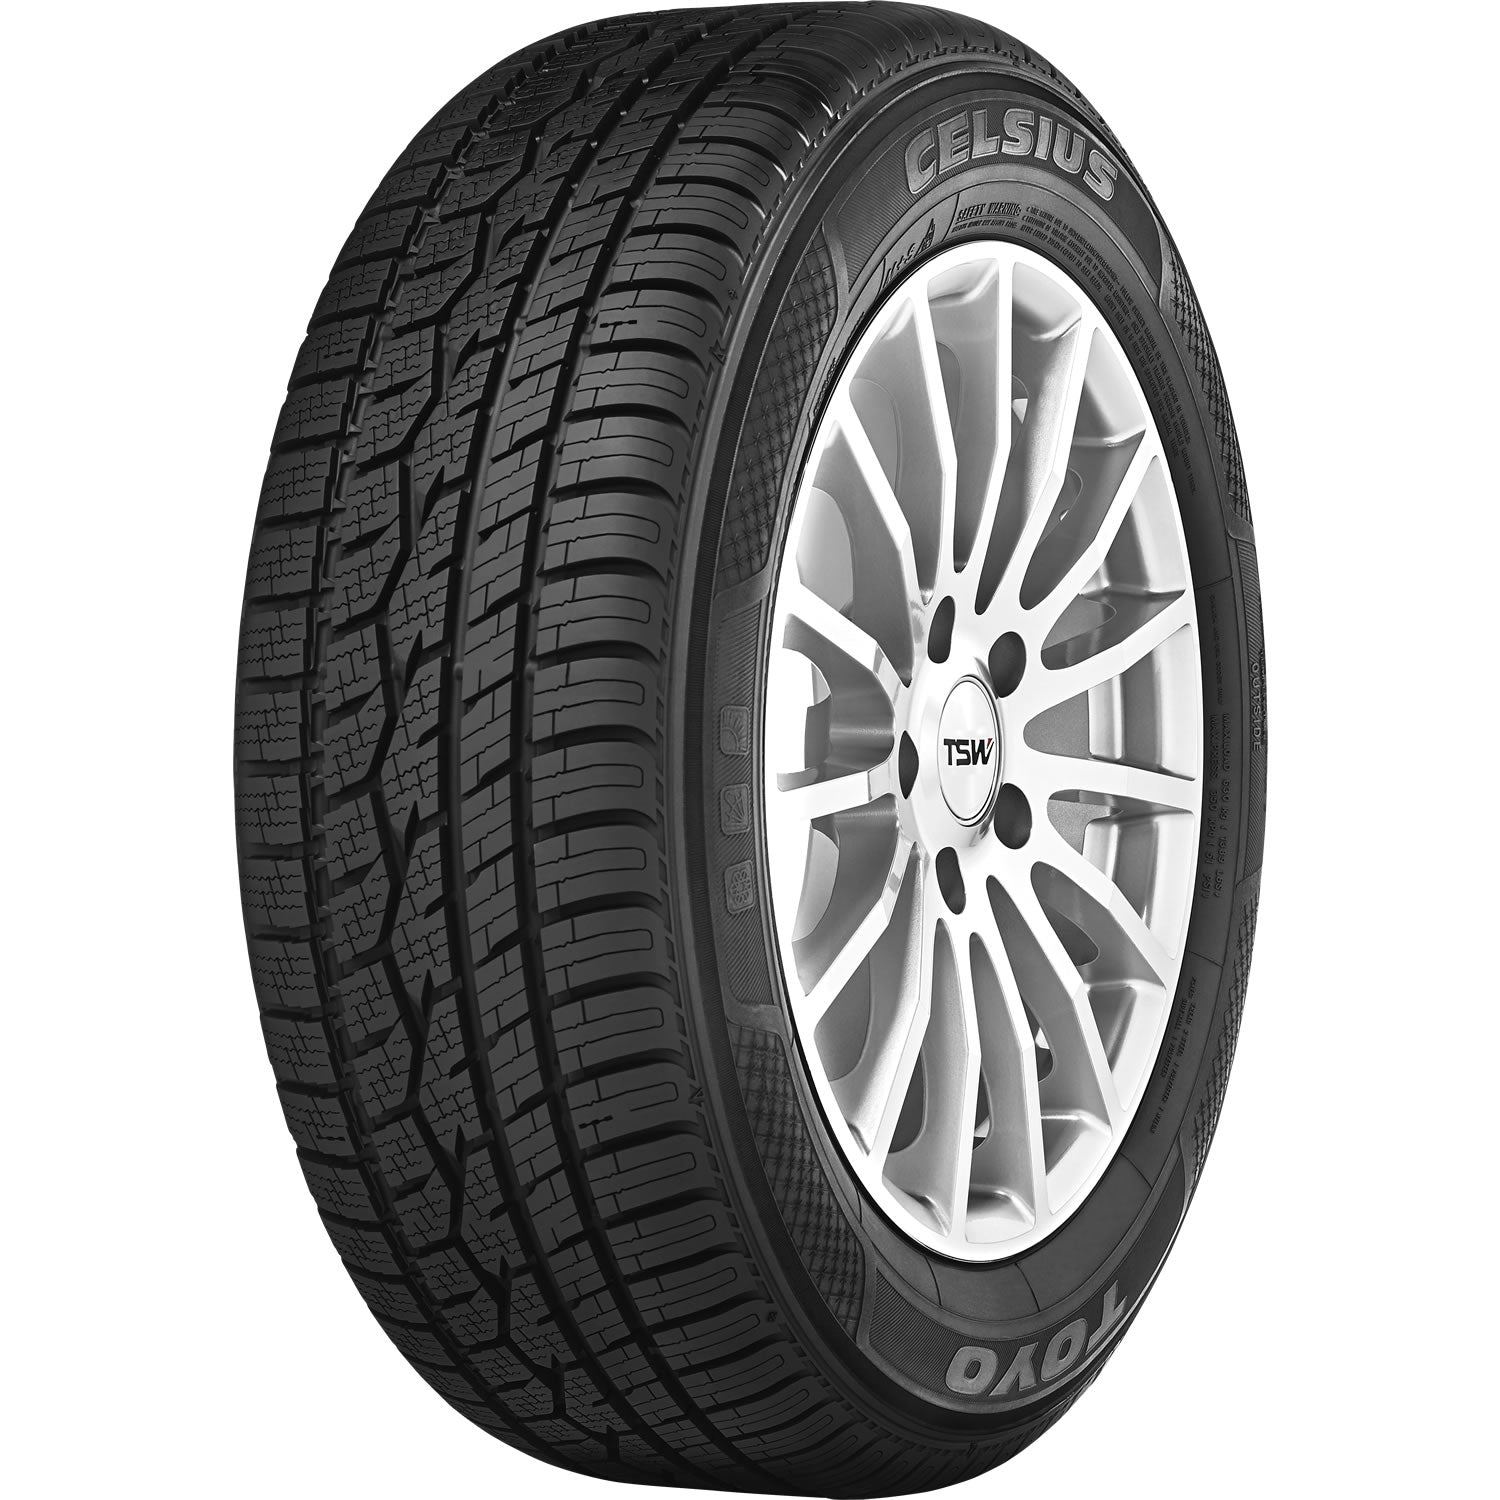 TOYO TIRES CELSIUS 205/50R17 (25.1X8.1R 17) Tires